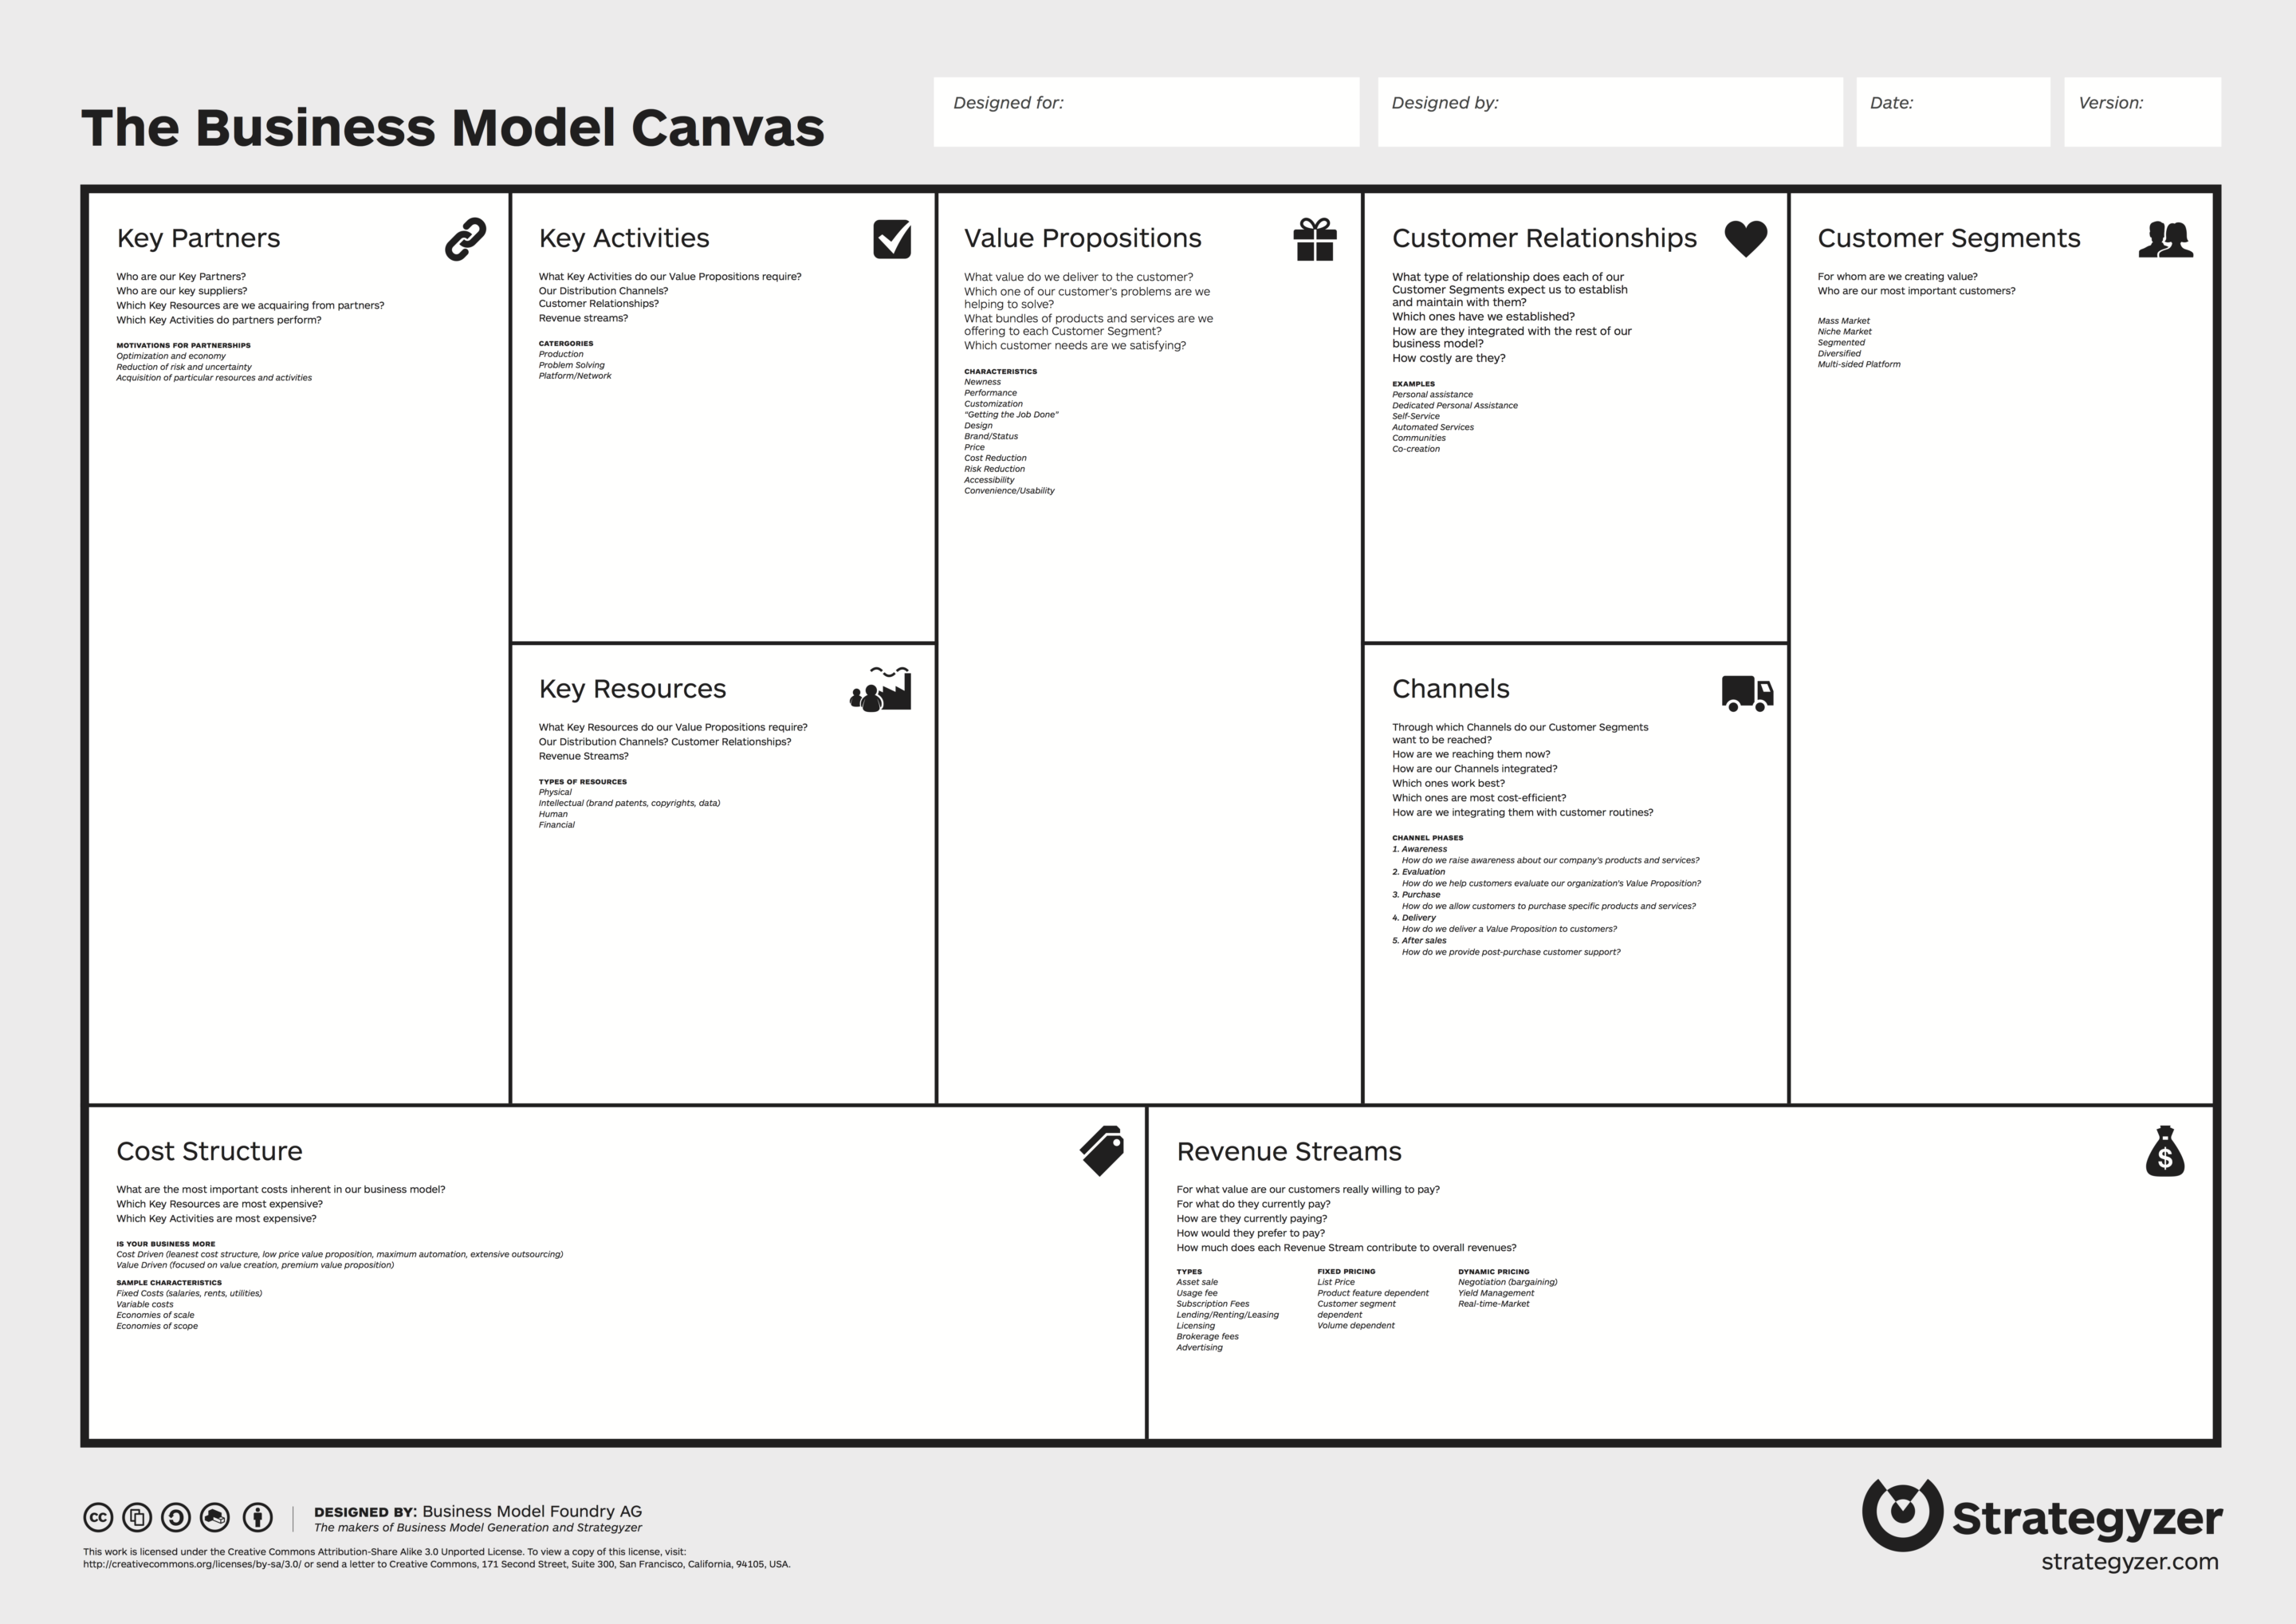 Business Model Canvas sangat membantu sekali pada tahap perencanaan, eksekusi, dan evaluasi suatu bisnis